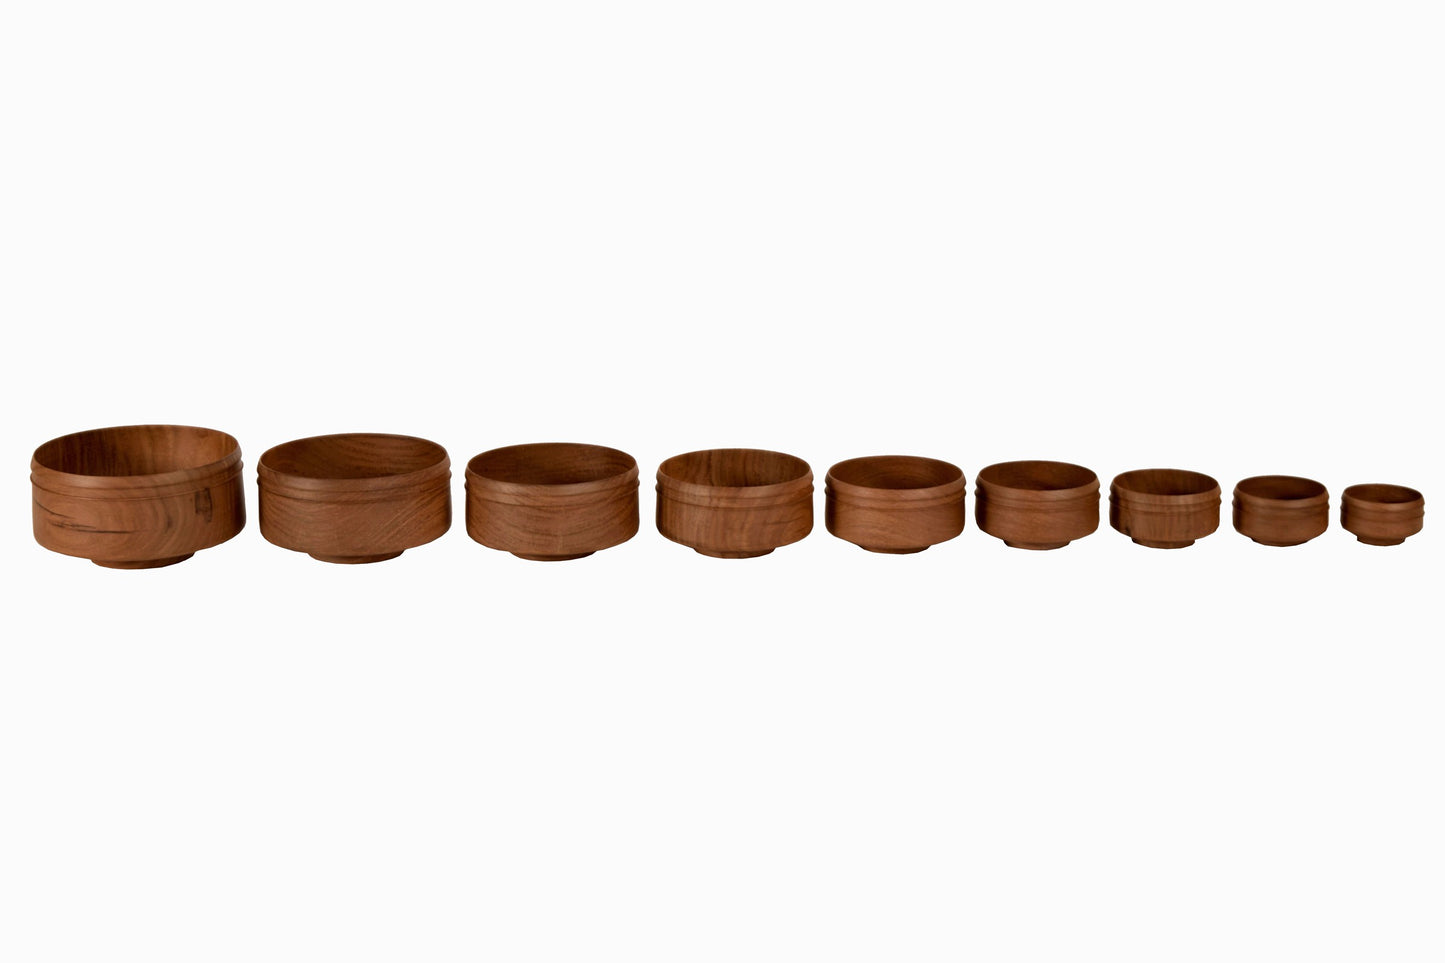 Cuencos de madera de monje jainista (juego de nueve)